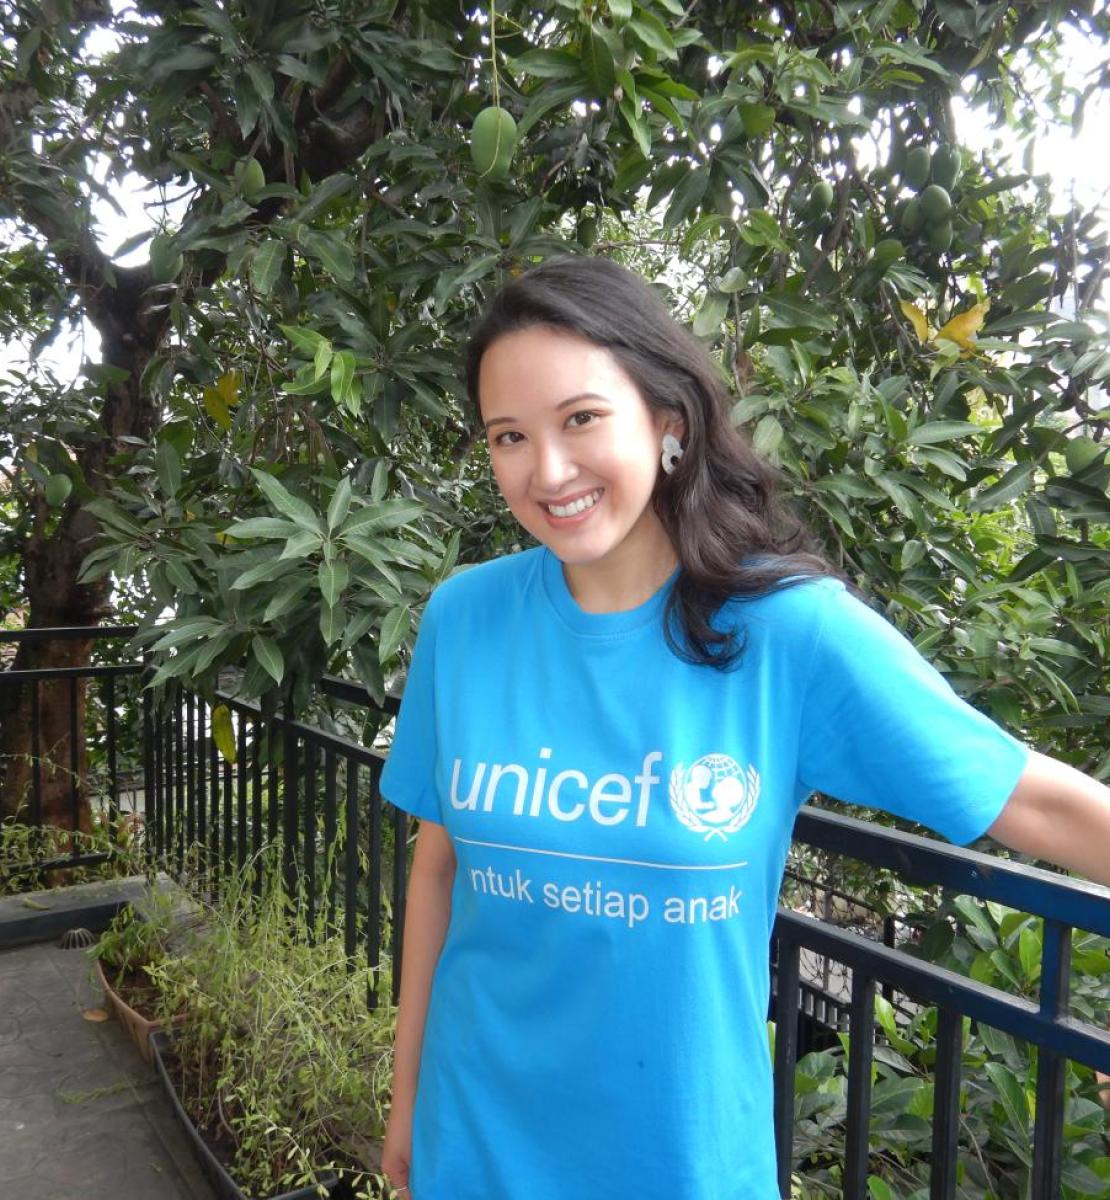 佐伊在2021年成为了联合国儿基会印尼代表处的一名联合国志愿者，开始了志愿服务之旅。